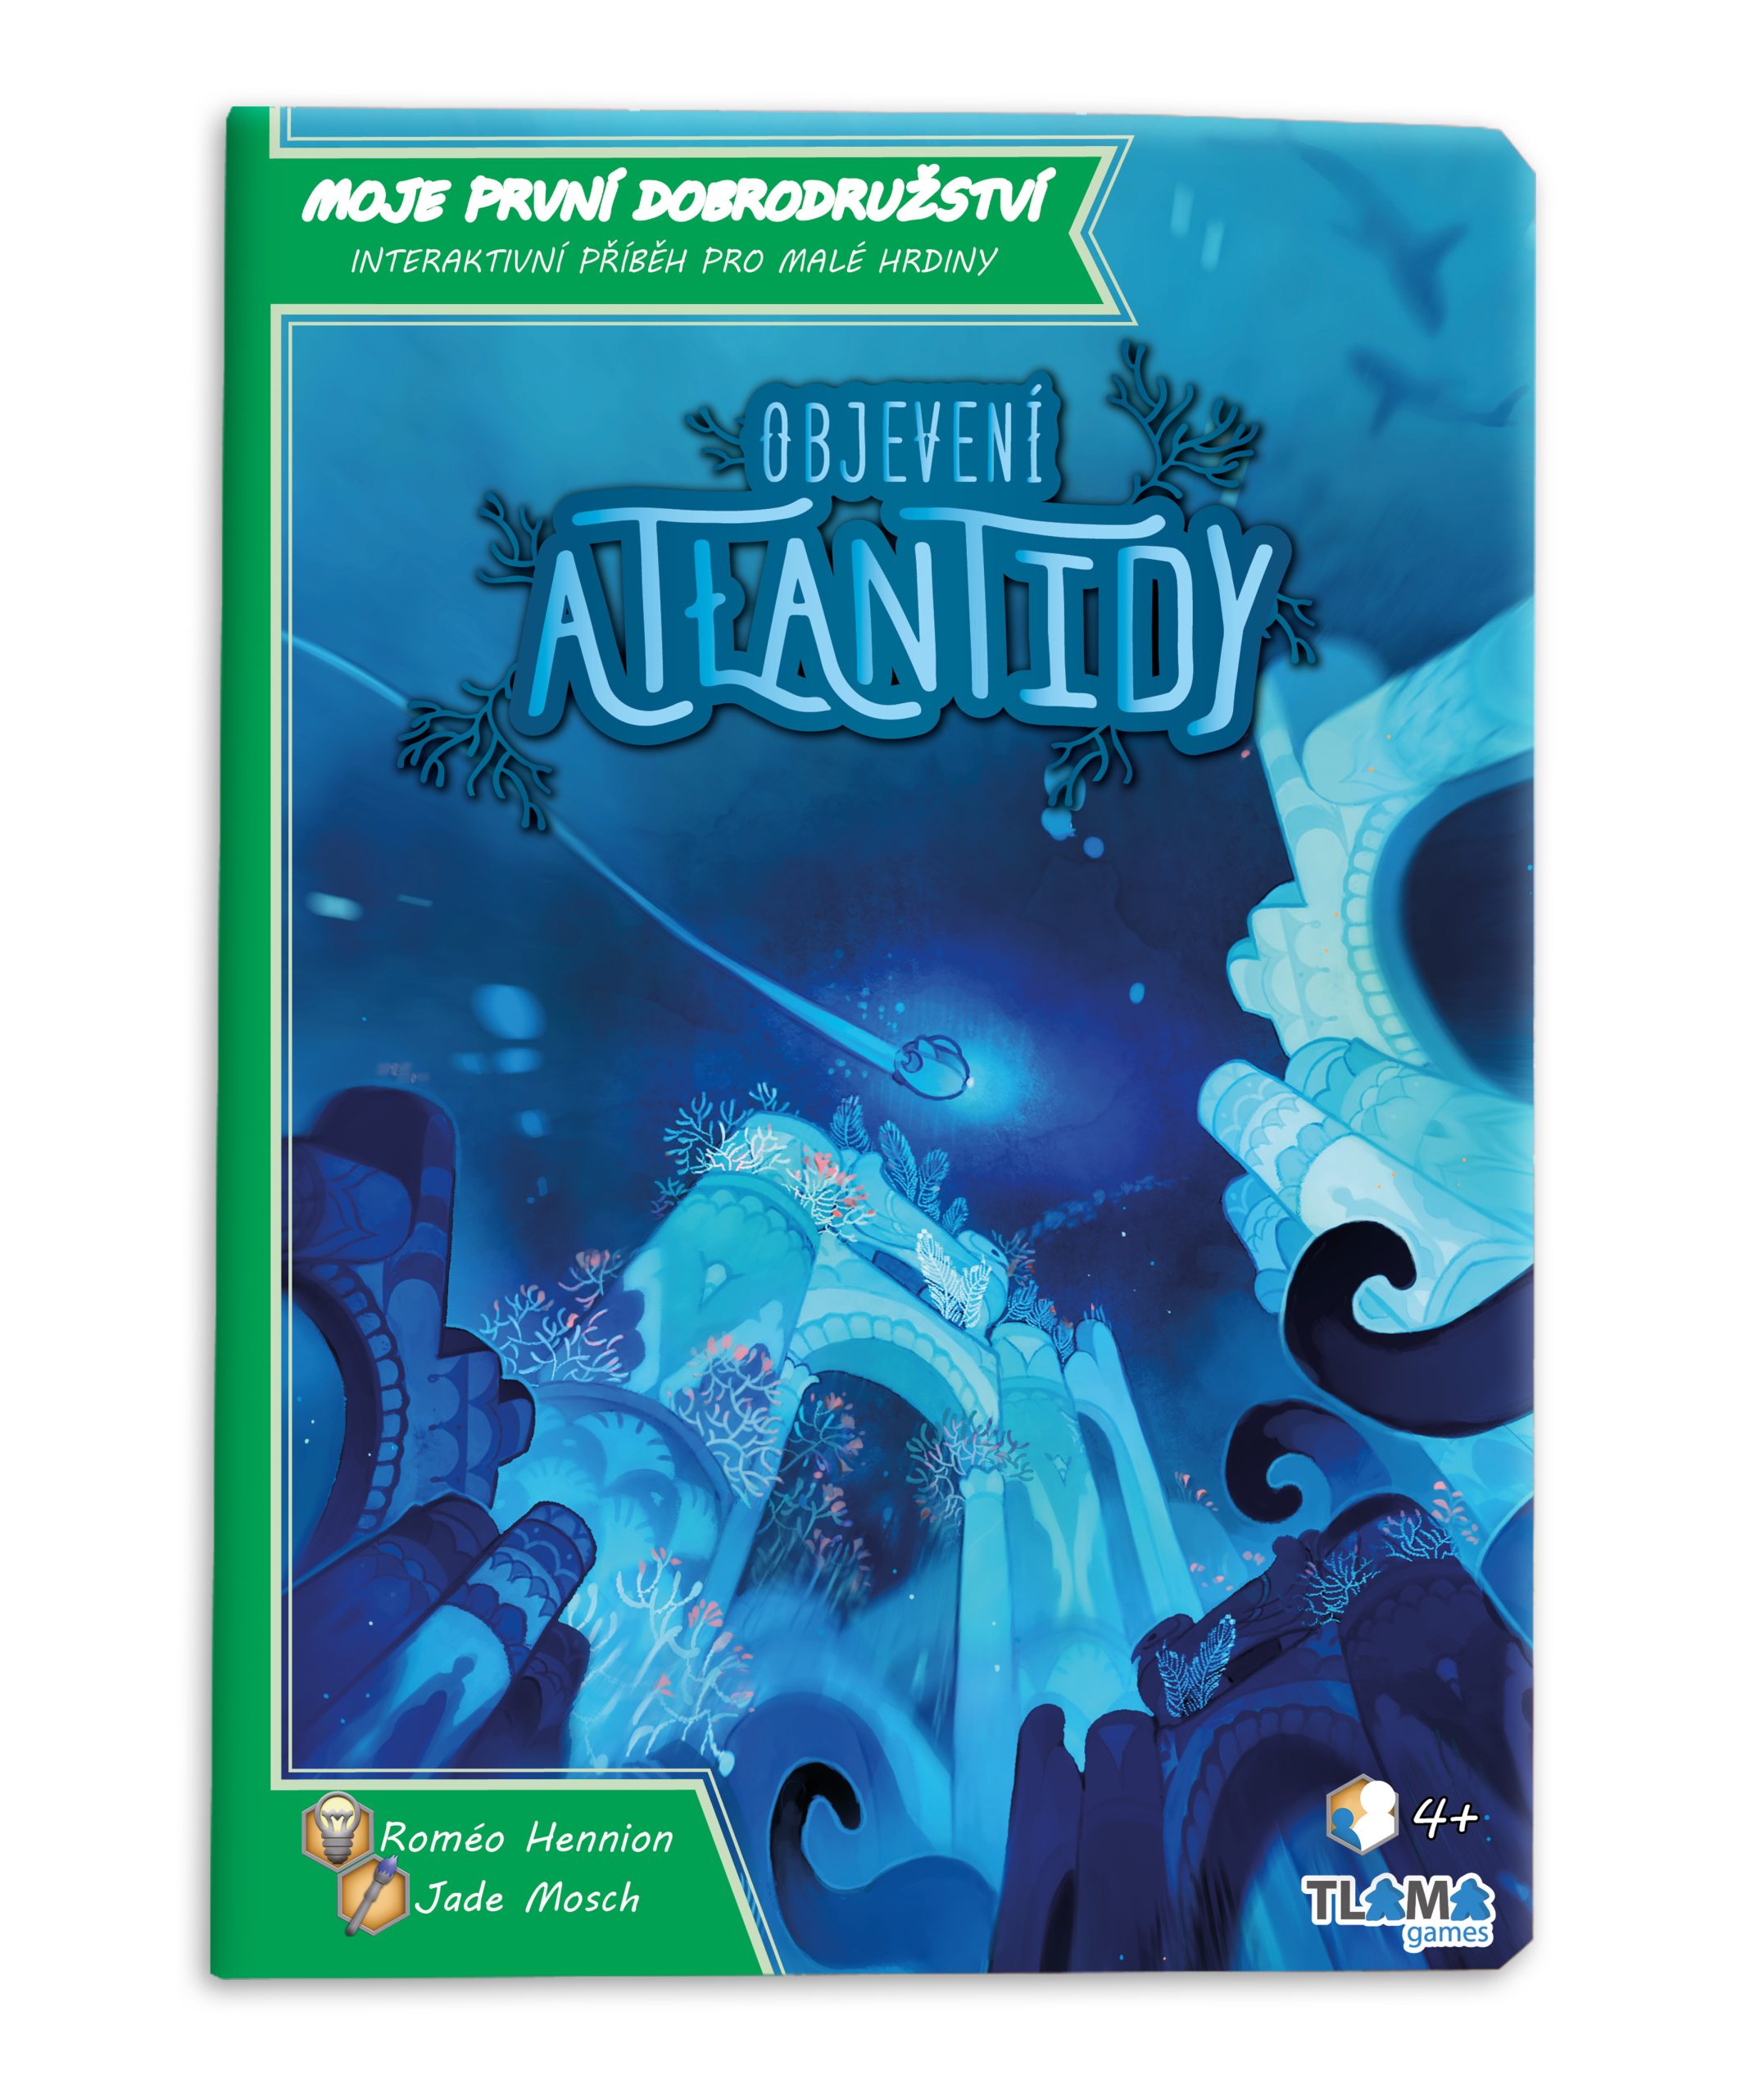 Moje první dobrodružství: Objevení Atlantidy - TLAMA games (interaktivní příběhová kniha)